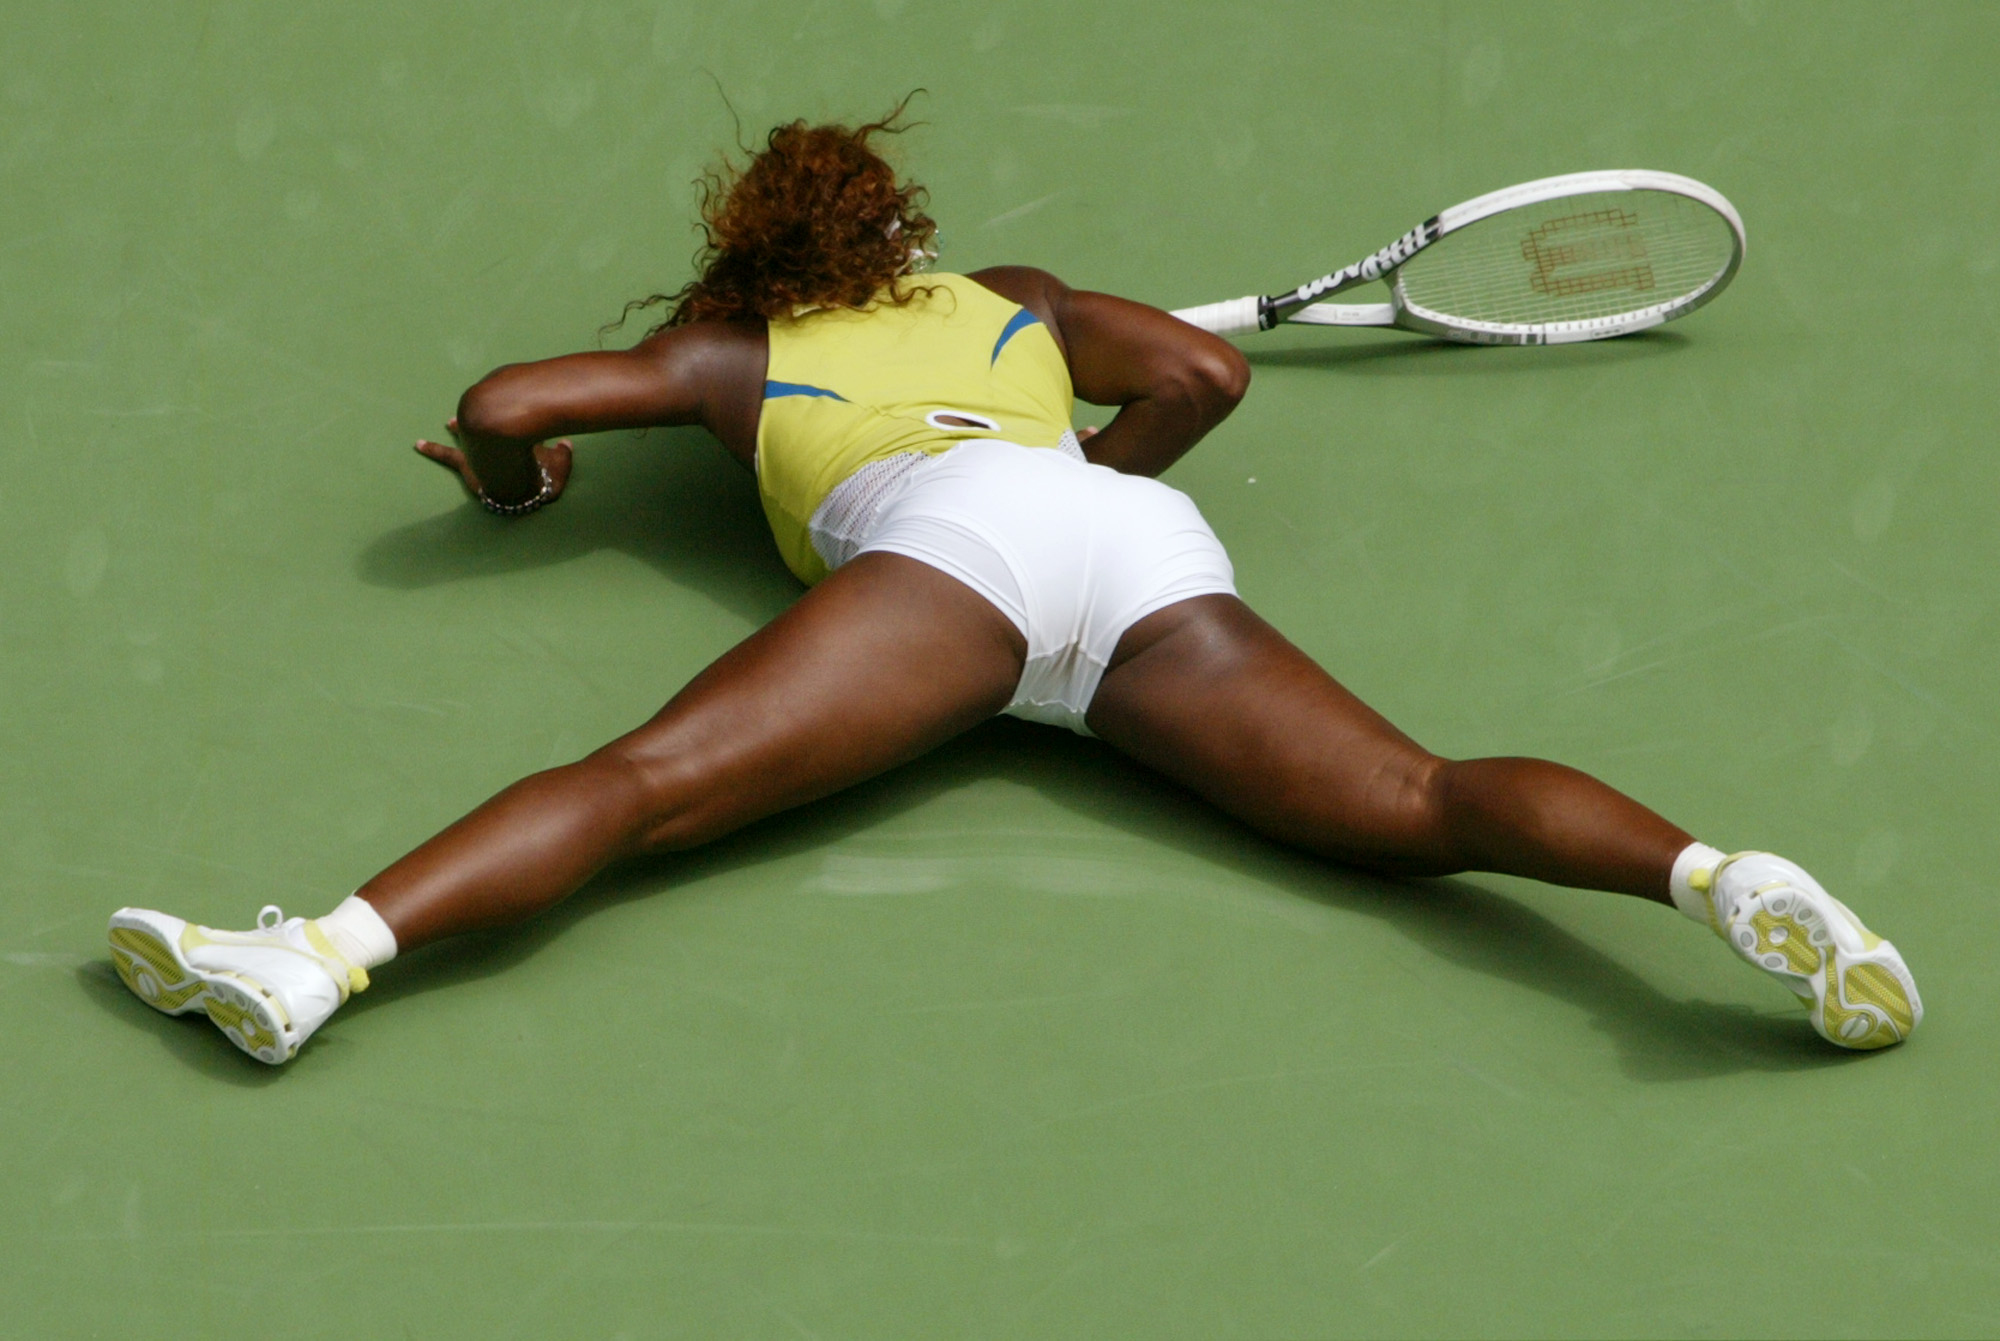 Momentos HOT de Serena Williams: Desnudos, picones y descuidos (FOTOS). 